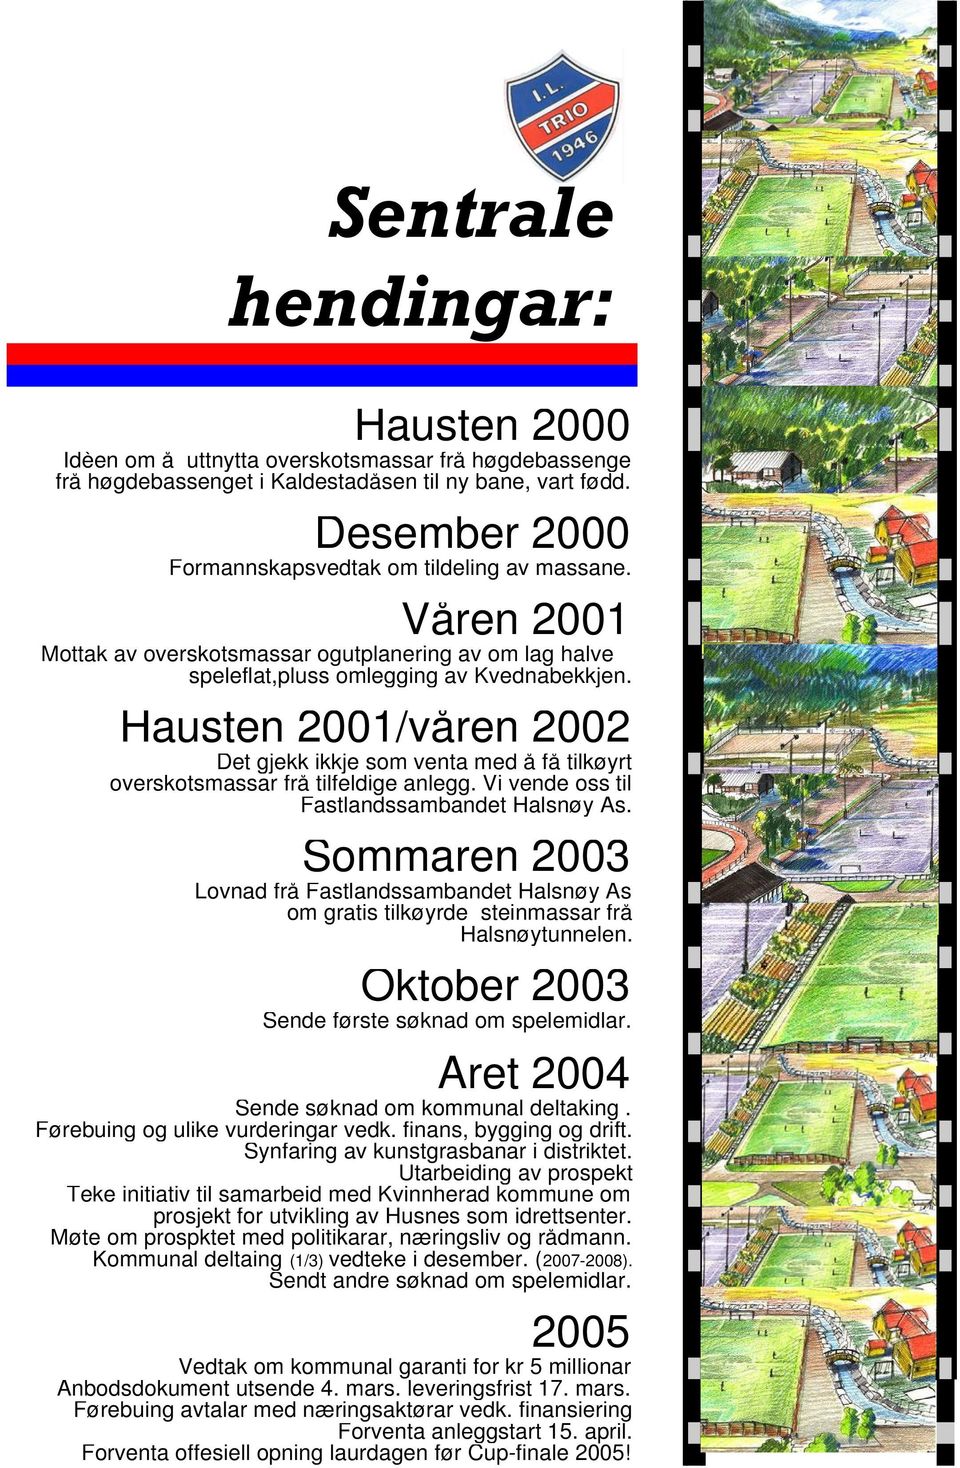 Hausten 2001/våren 2002 Det gjekk ikkje som venta med å få tilkøyrt overskotsmassar frå tilfeldige anlegg. Vi vende oss til Fastlandssambandet Halsnøy As.